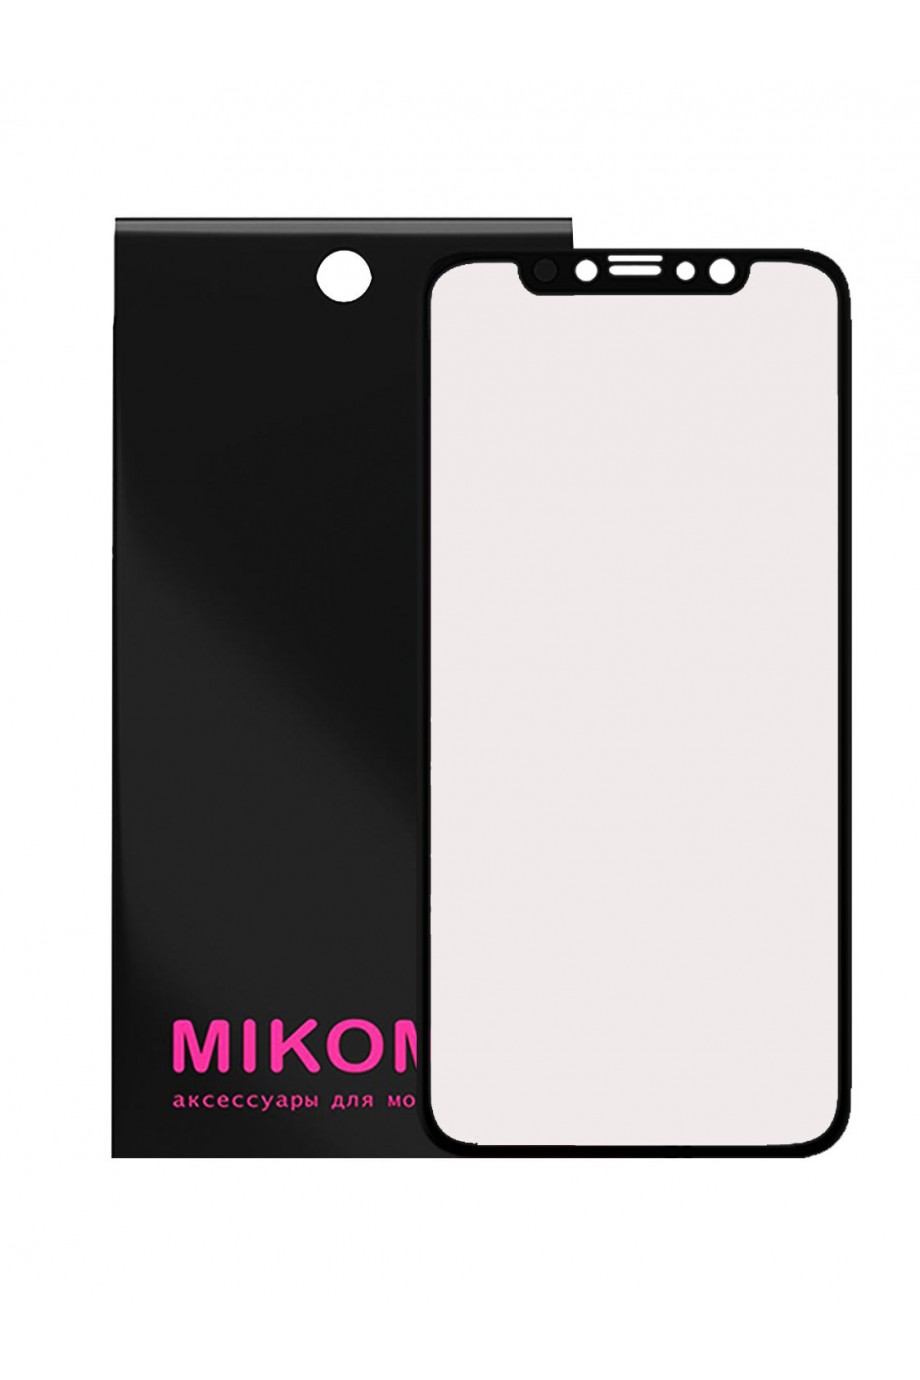 Защитная пленка 3D Mikomo для iPhone 11, черная рамка, полный клей